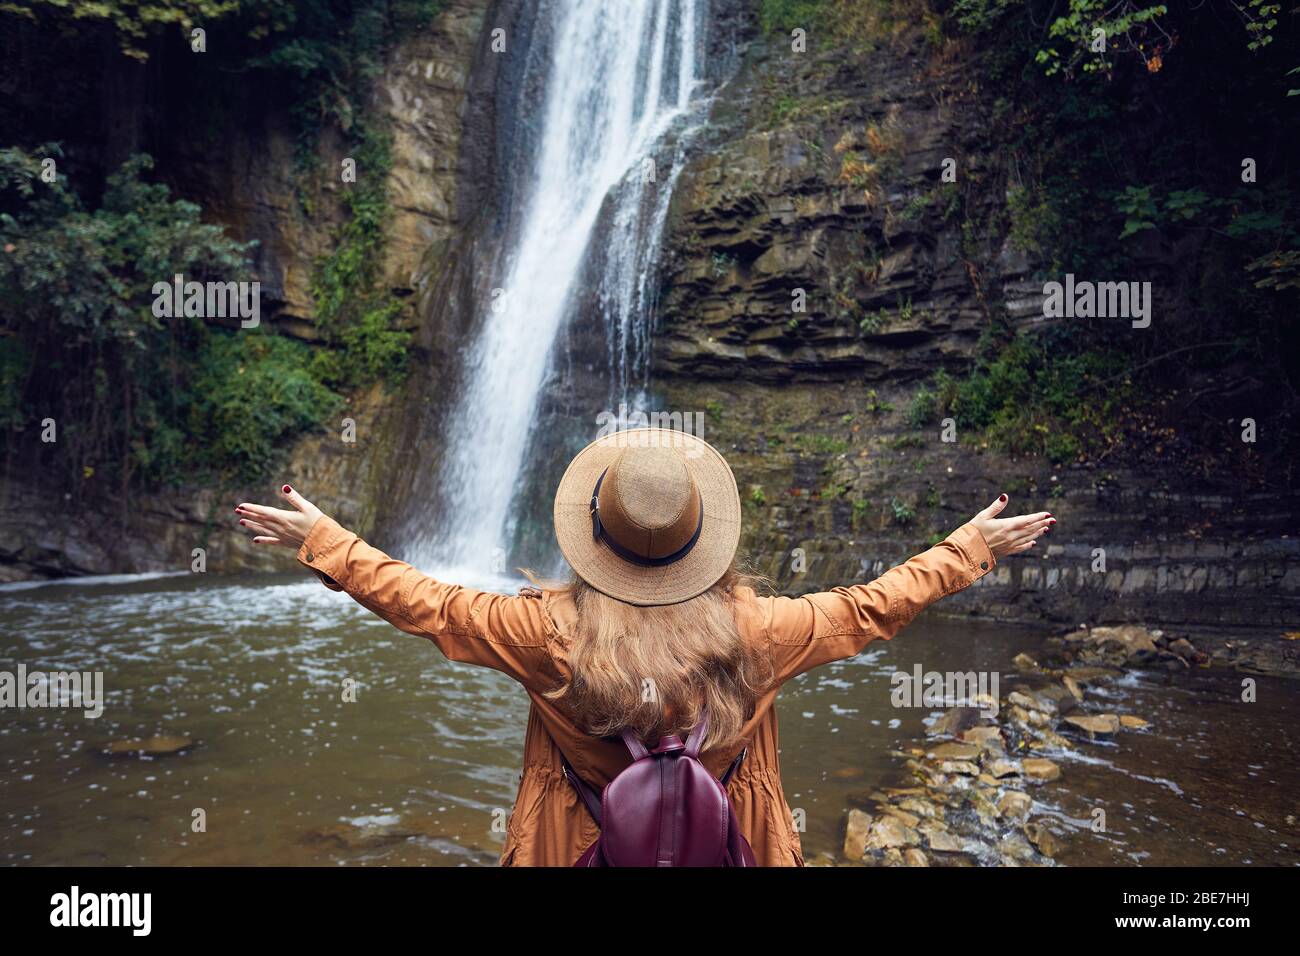 Woman in Hat prends sa main près de cascade dans le Jardin Botanique à Tbilissi, Géorgie Banque D'Images